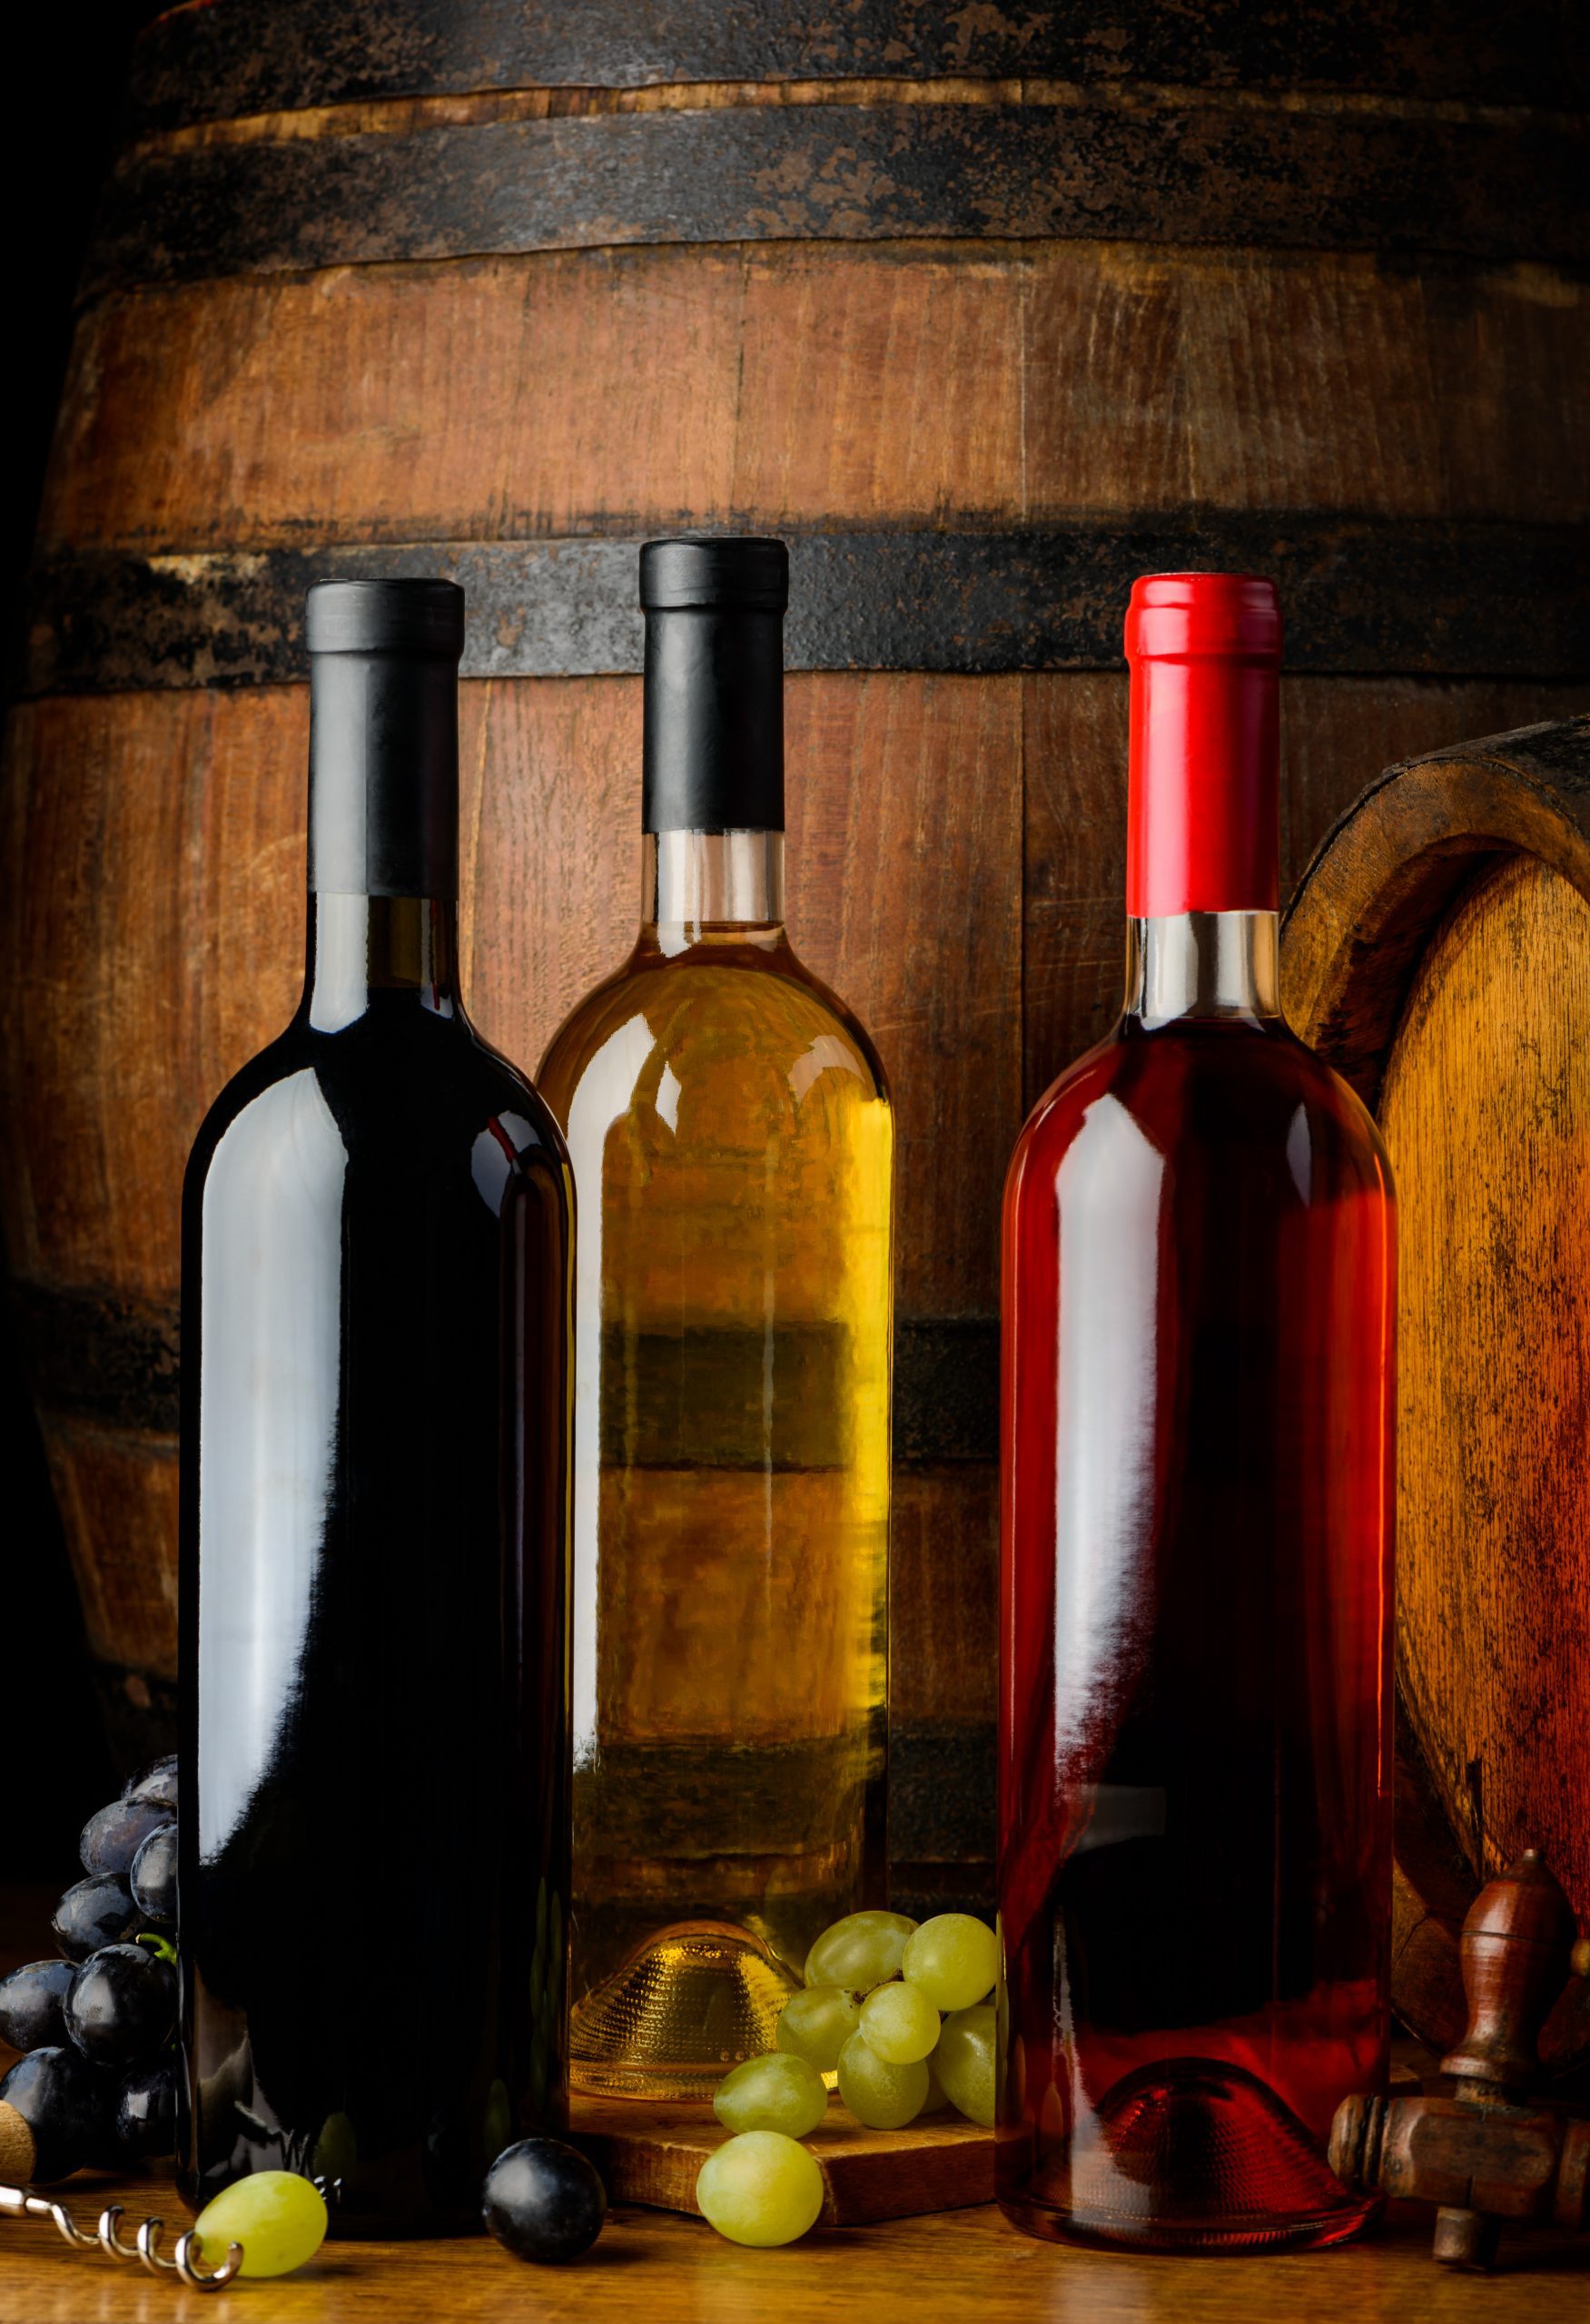 Označenia na etiketách vína – kabinetné víno, akostné víno s prívlastkom, slamové víno a iné